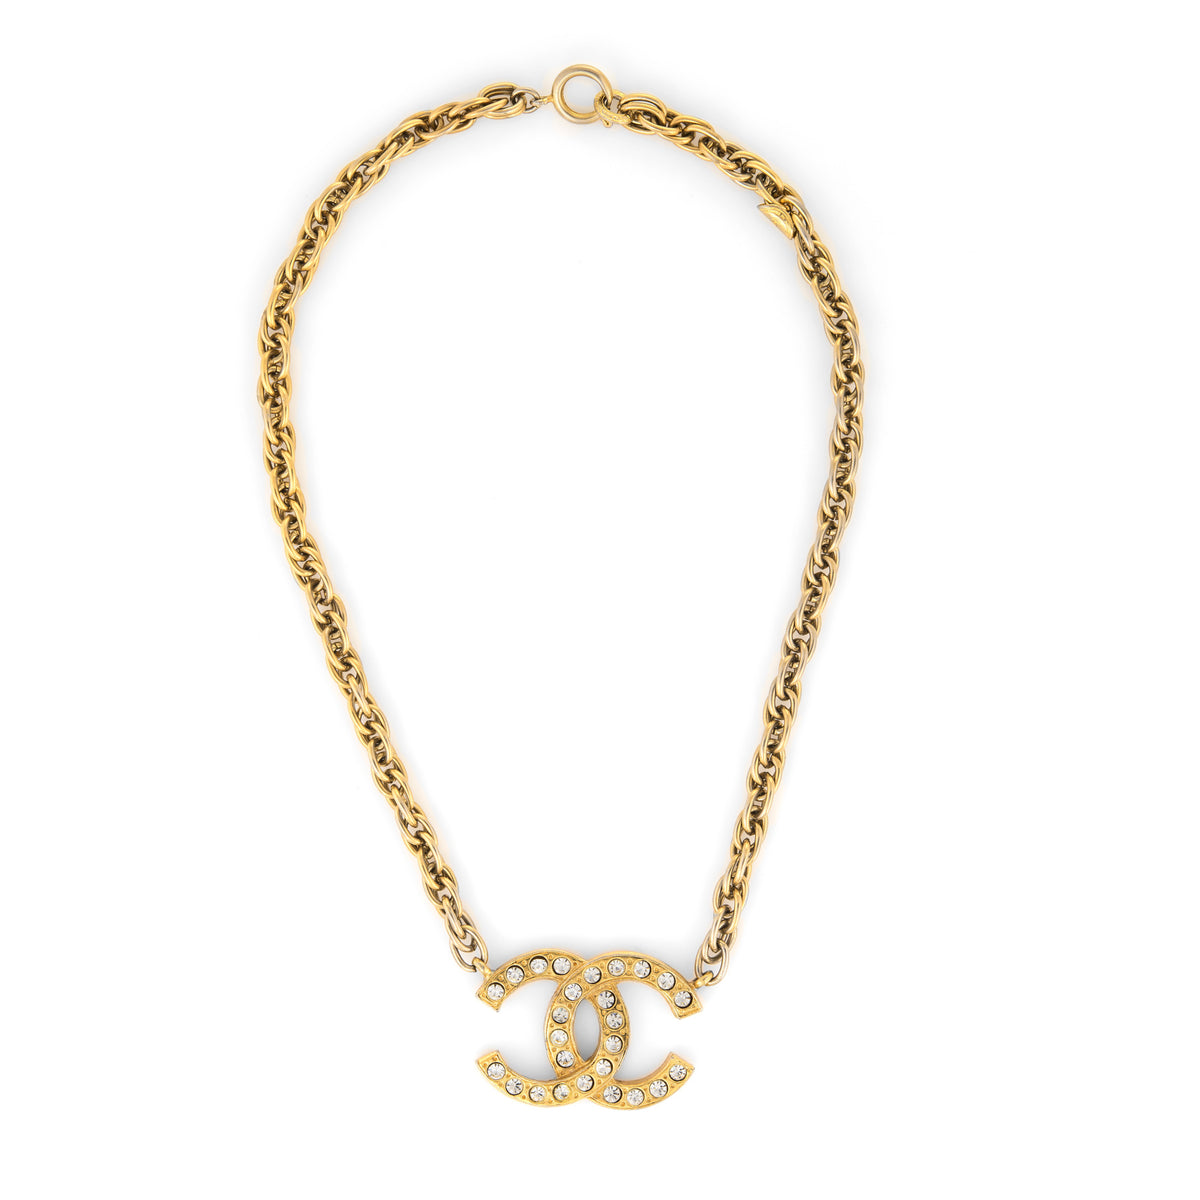 Authentic Vintage Chanel necklace chain CC logo double C